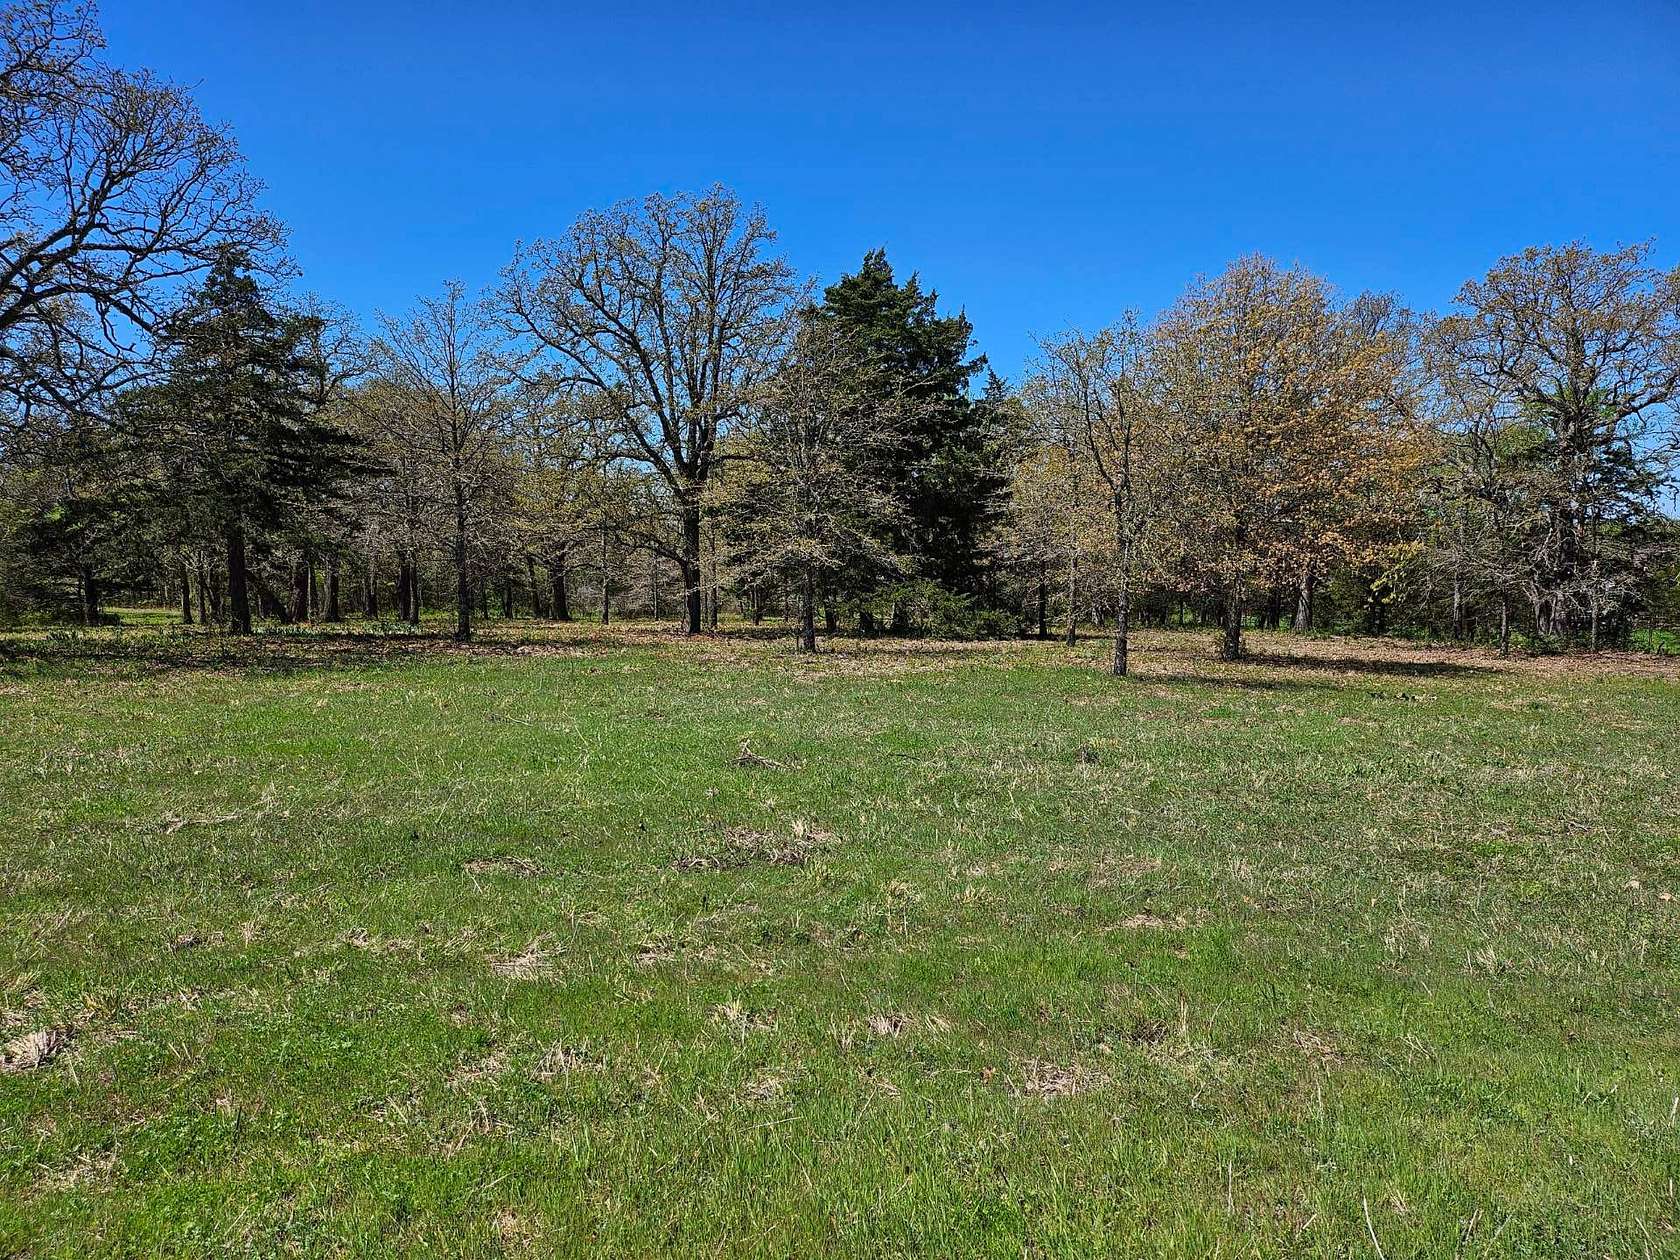 430 Acres of Recreational Land & Farm for Sale in Wapanucka, Oklahoma